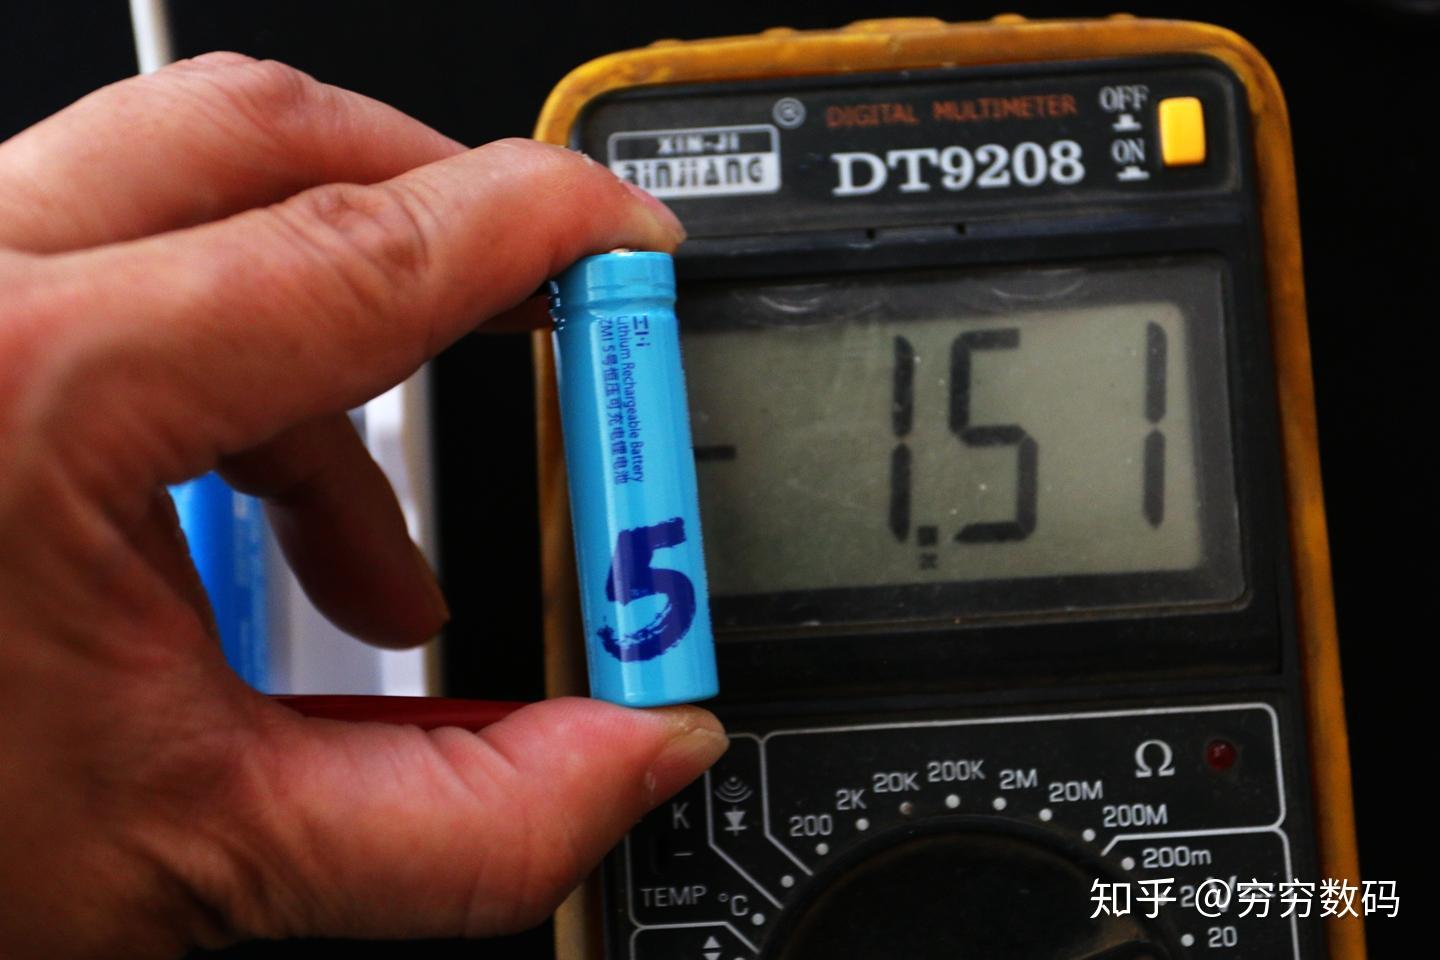 改装红米note2手机电池成功 - 电子制作DIY